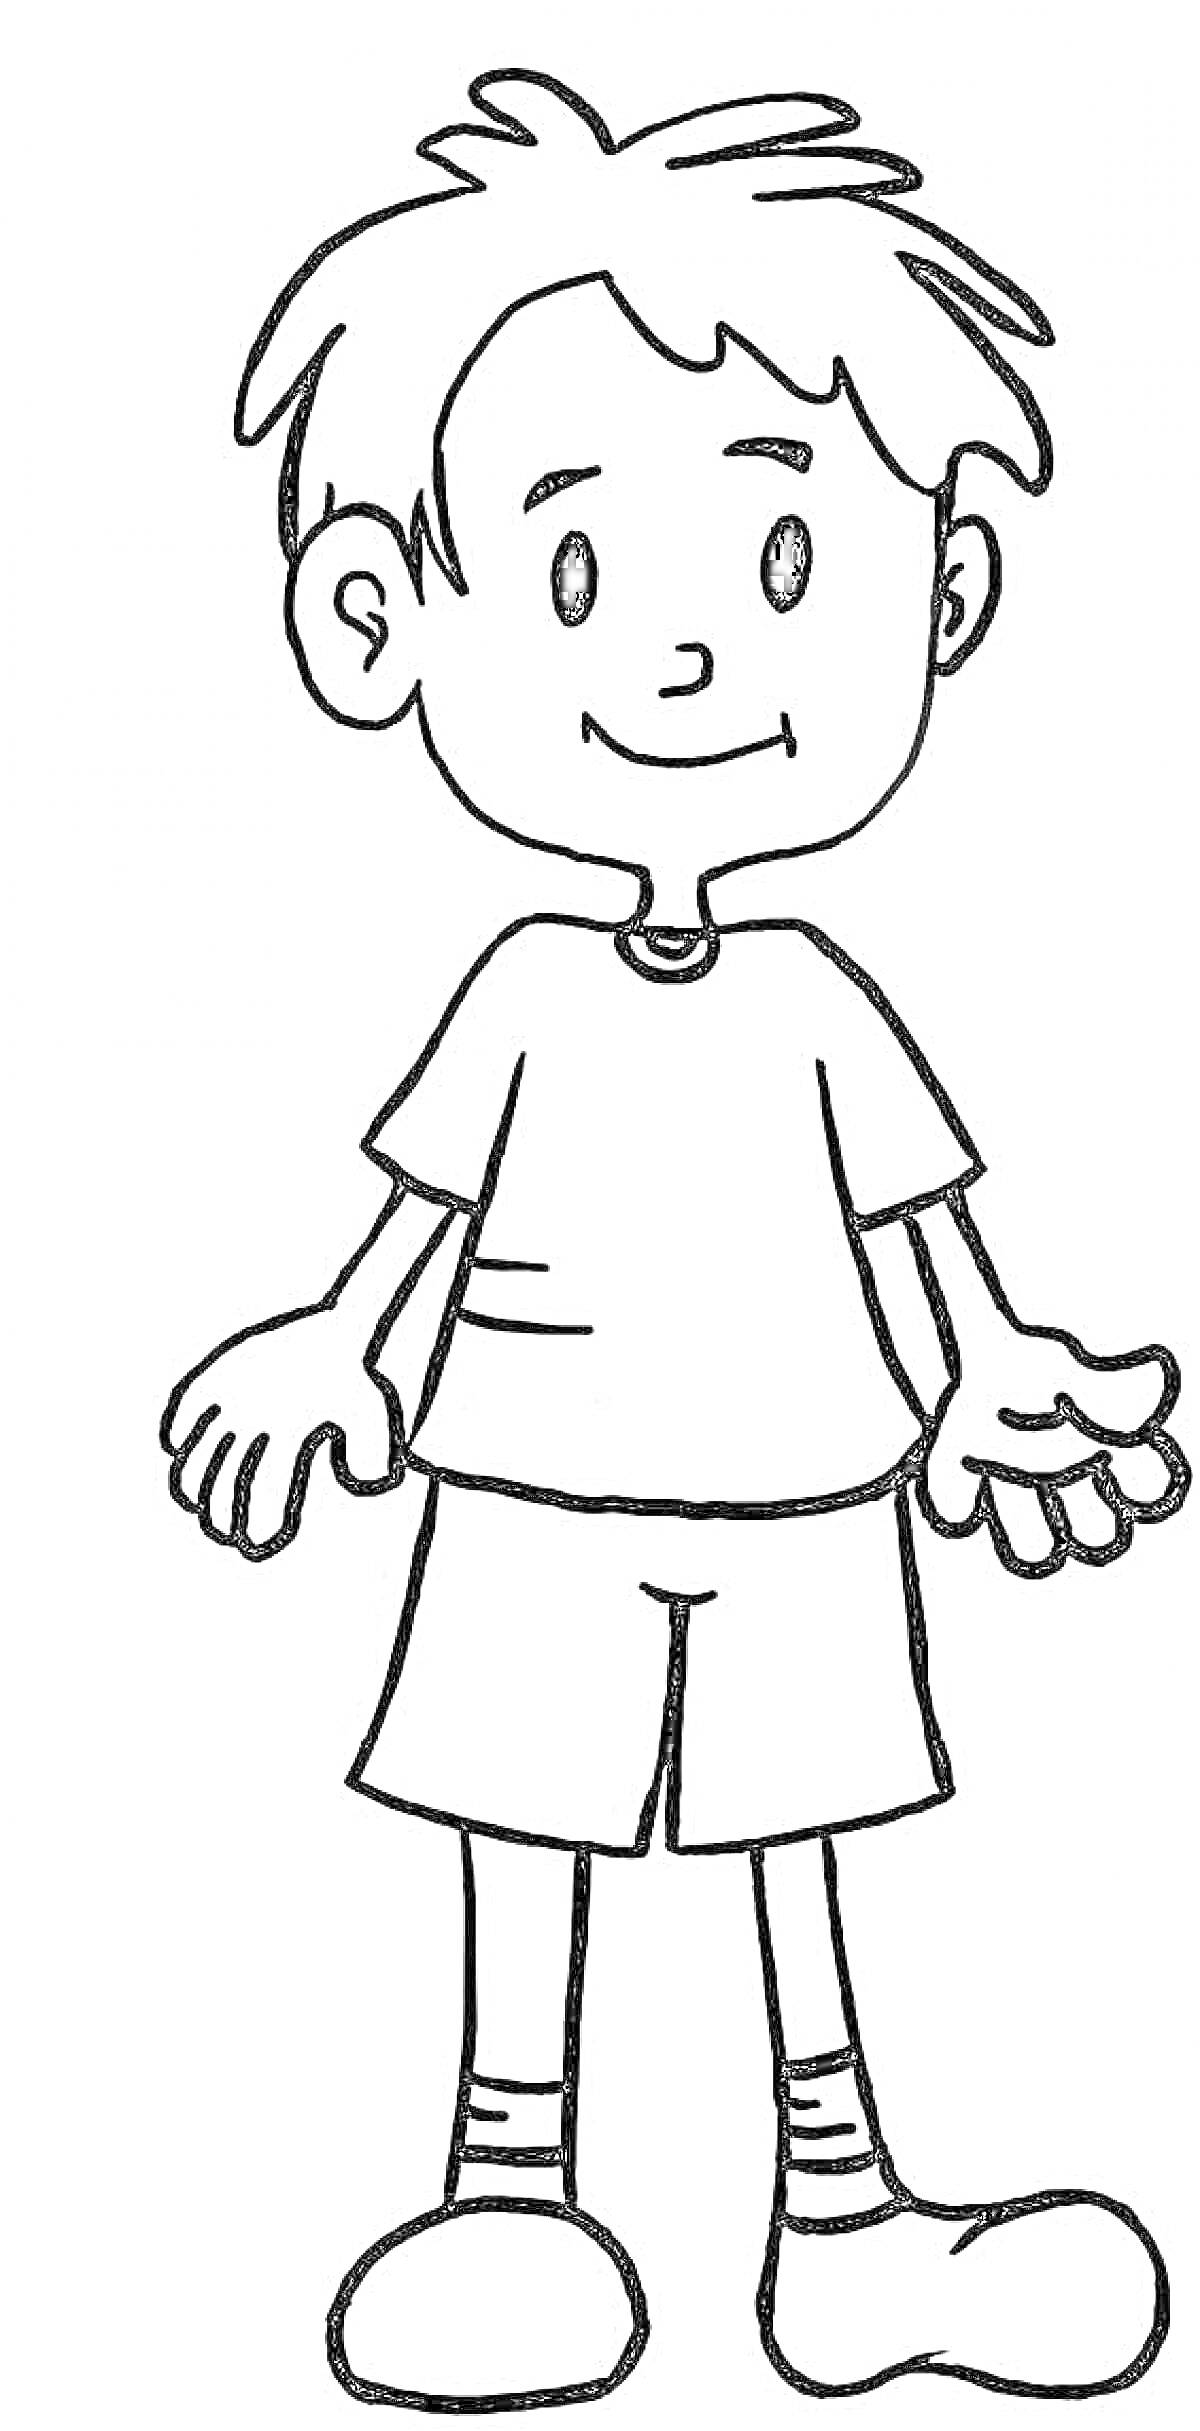 Раскраска Мальчик в футболке, шортах и кроссовках, с короткими волосами и улыбкой на лице